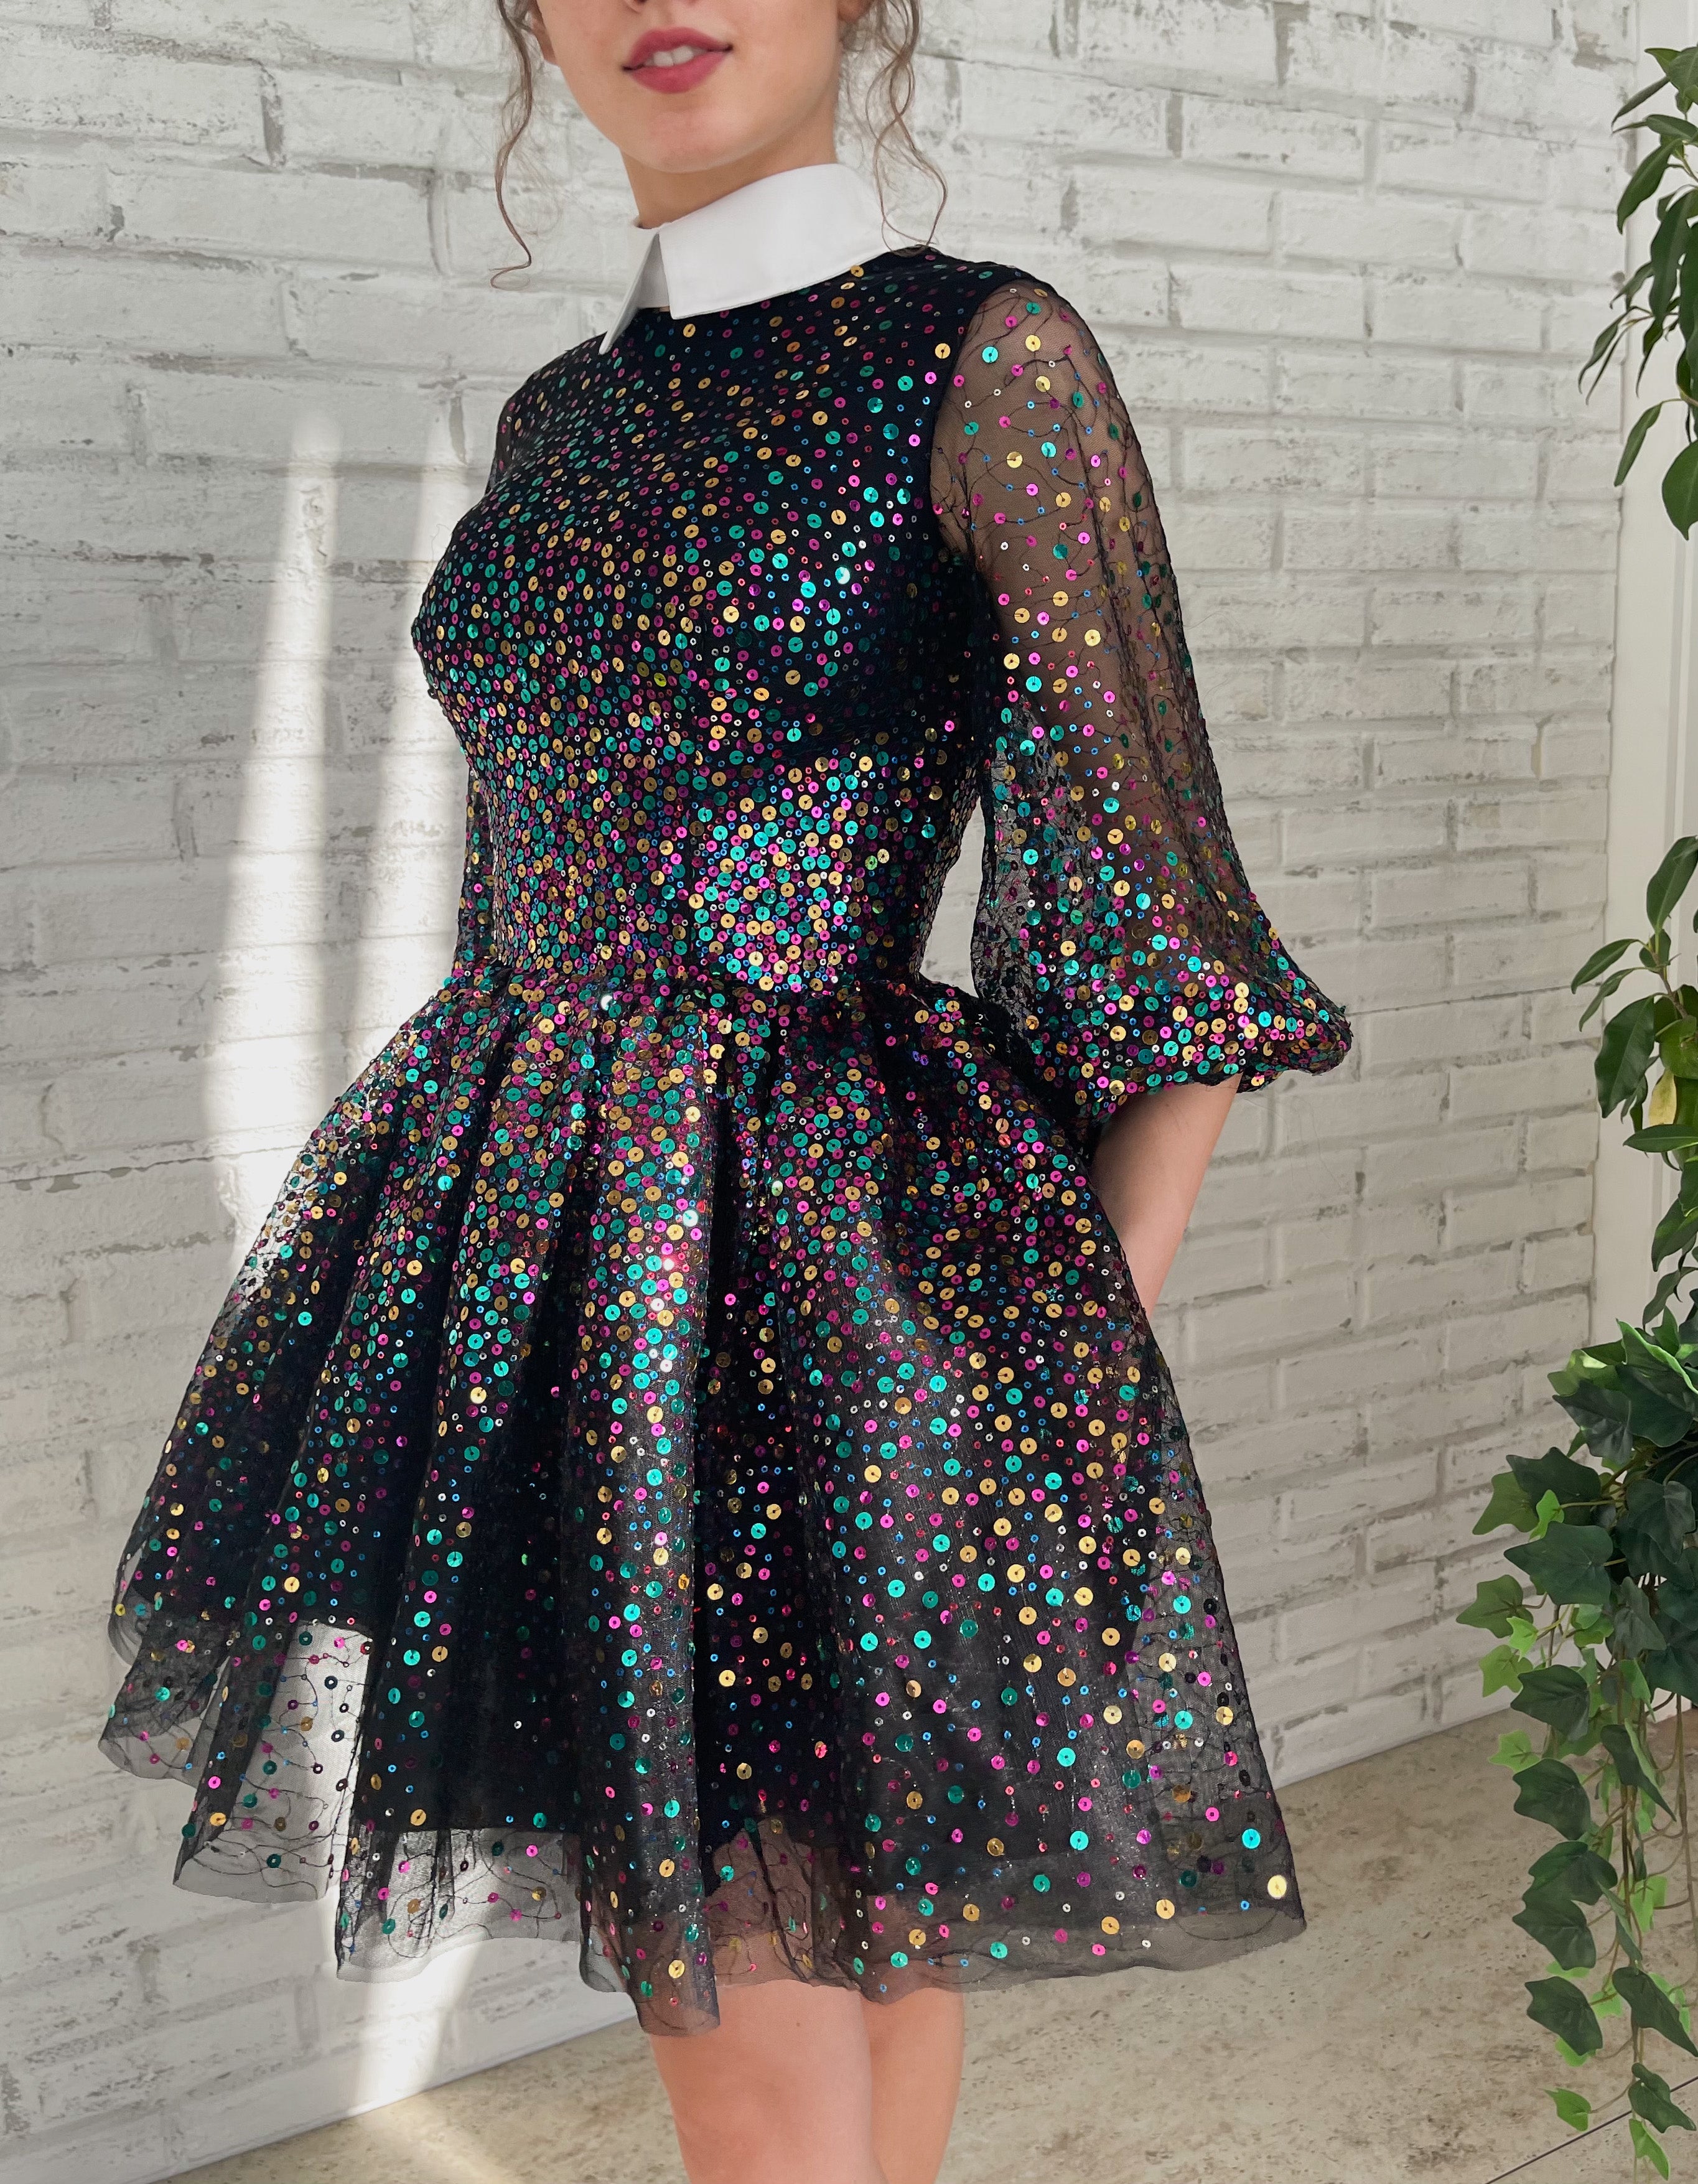 Teuta Constellation Mini Matoshi | Rainbow Dress